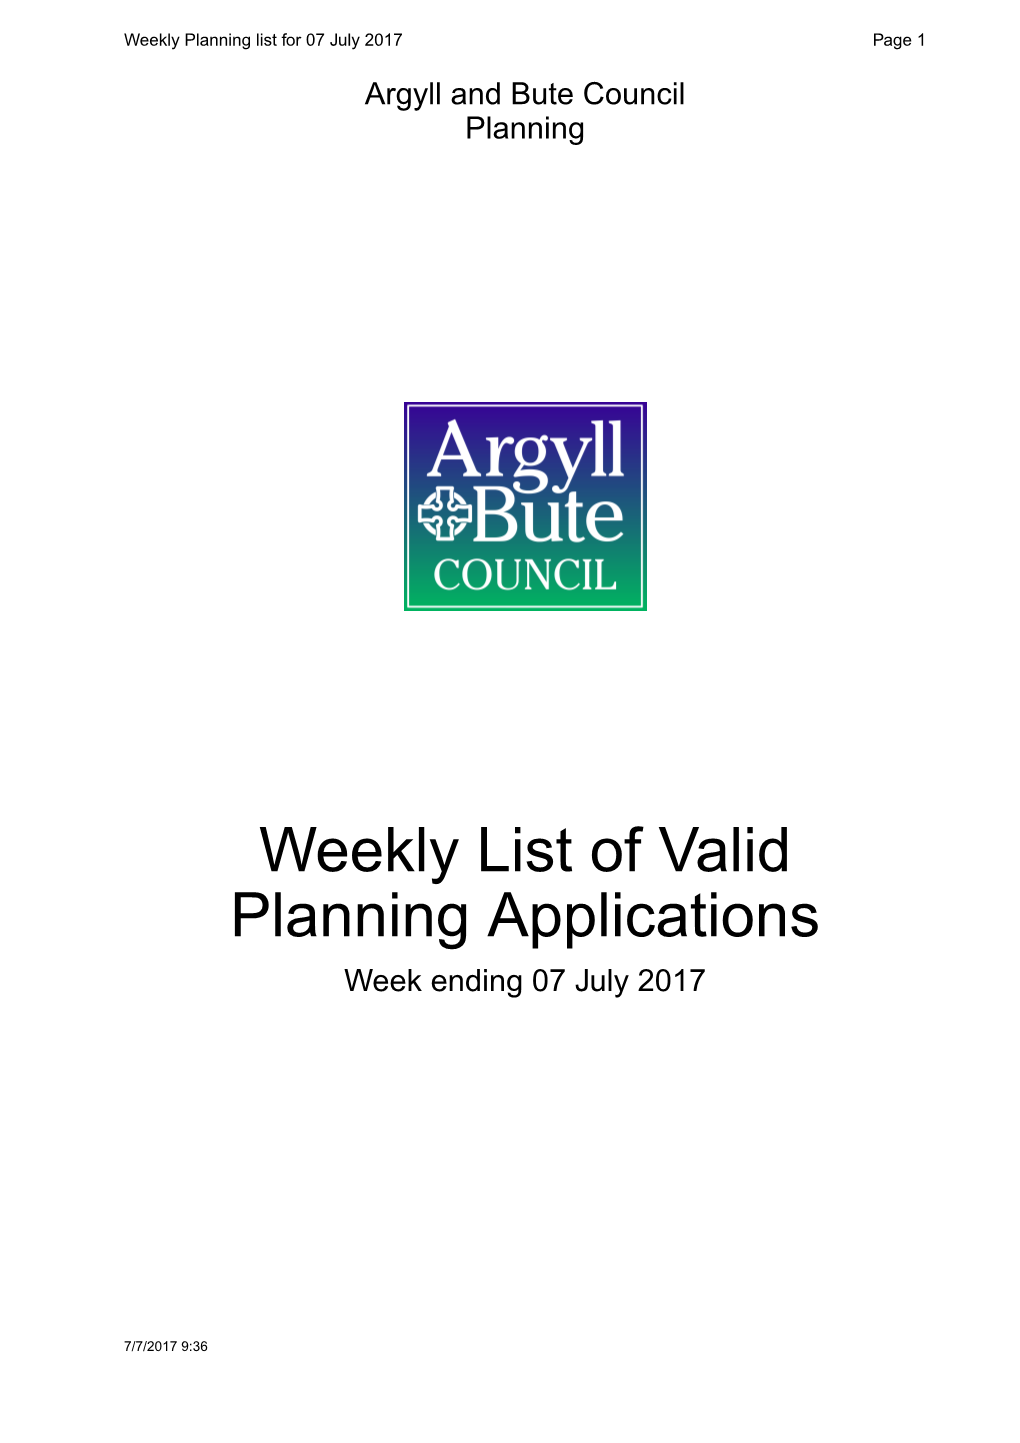 Weekly List of Valid Planning Applications Week Ending 07 July 2017